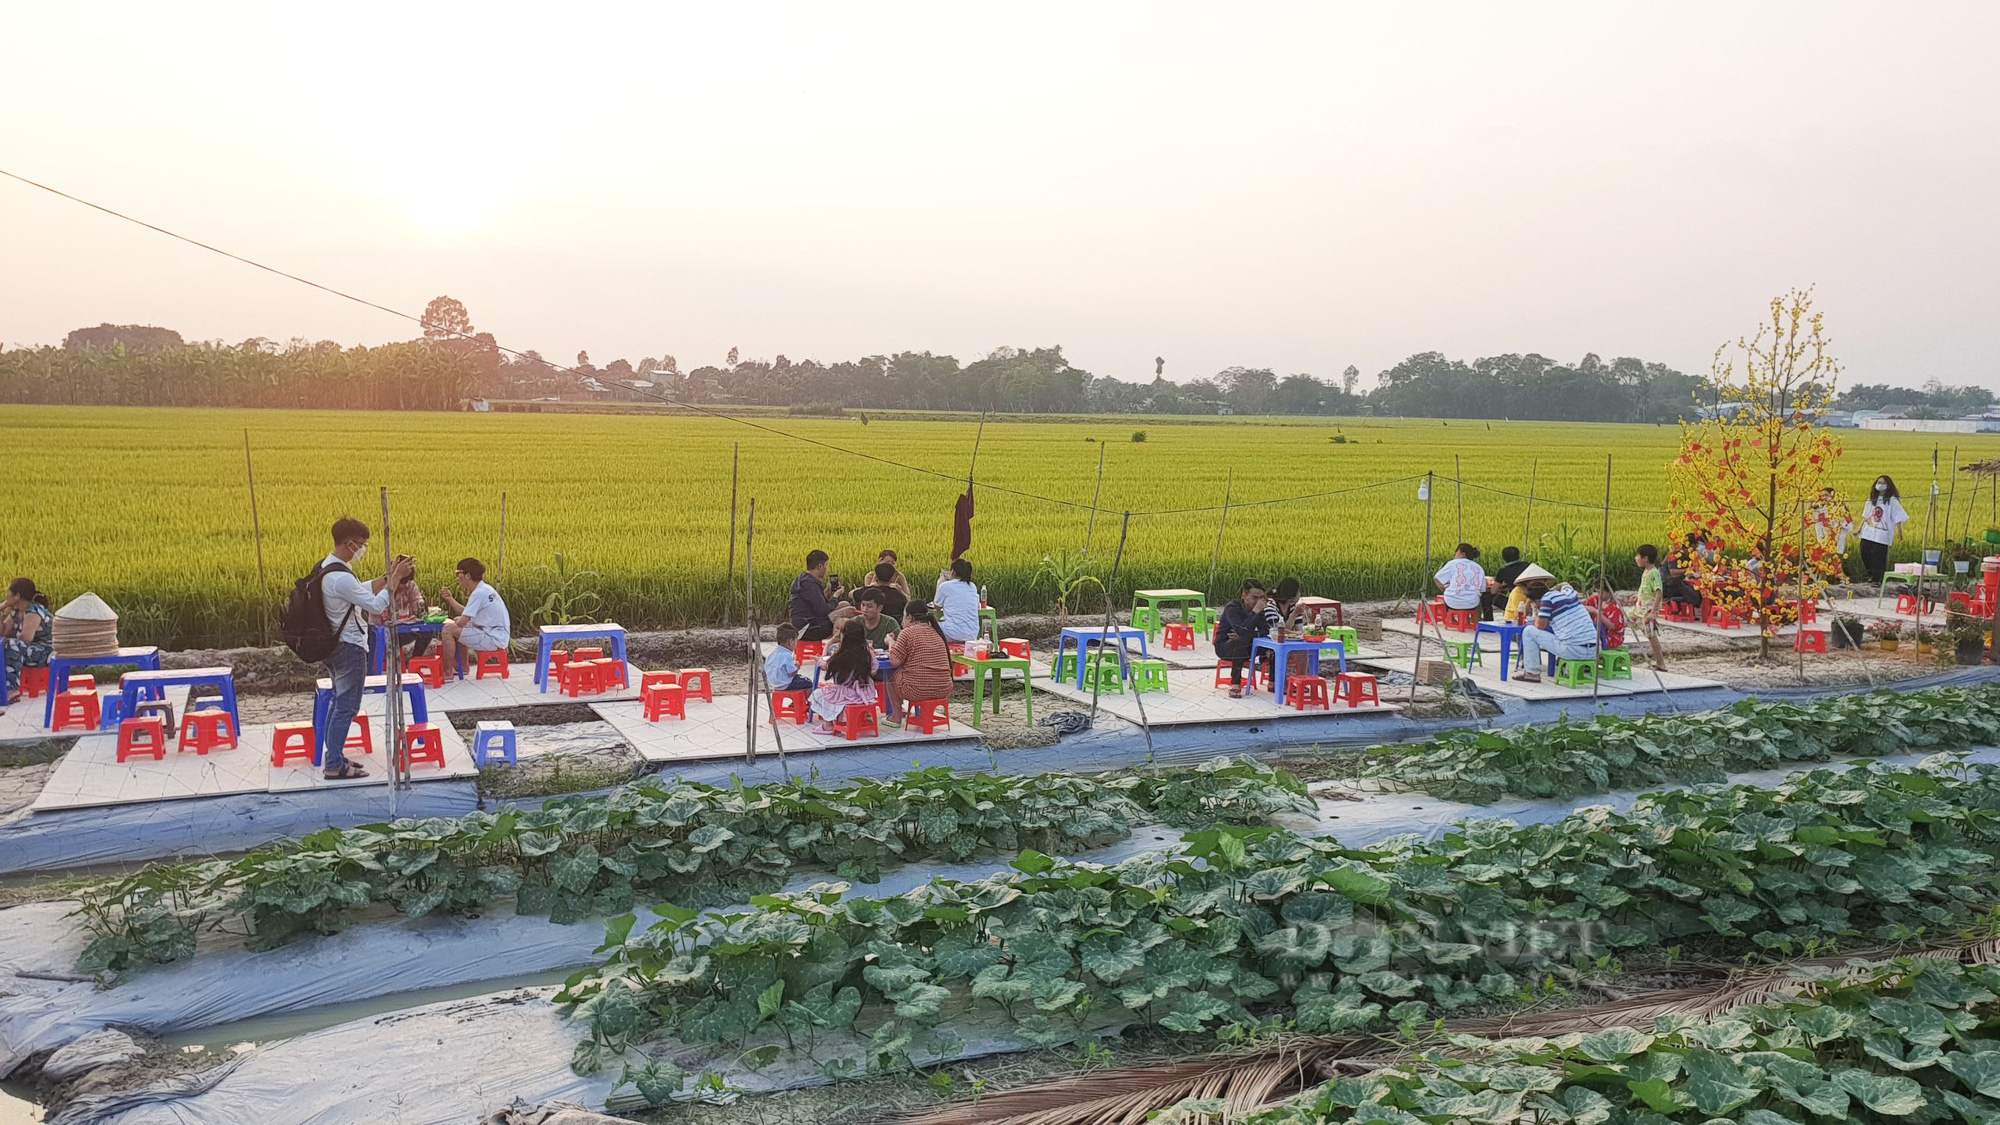 Quán ăn giữa ruộng ở Cần Thơ bất ngờ thu hút cả trăm người dân đến ăn, chụp ảnh mỗi ngày - Ảnh 6.